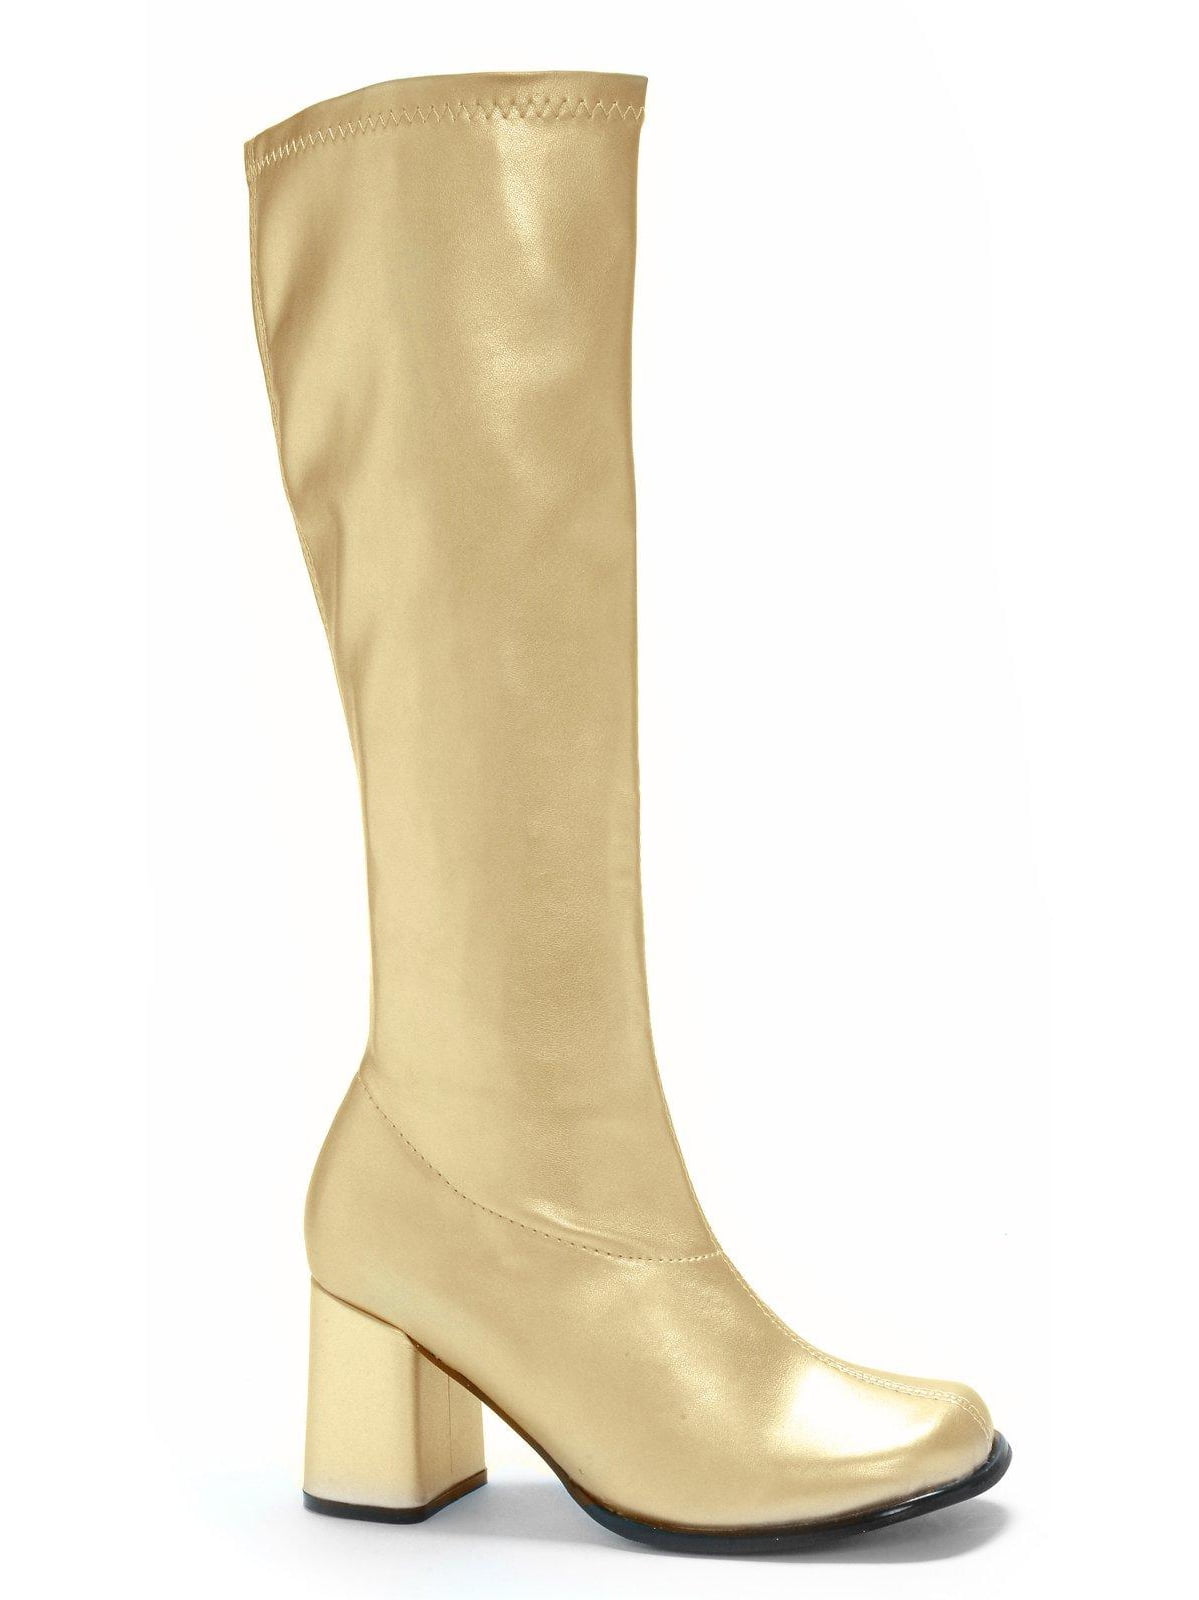 Gogo (Gold) Adult Boots - Walmart.com